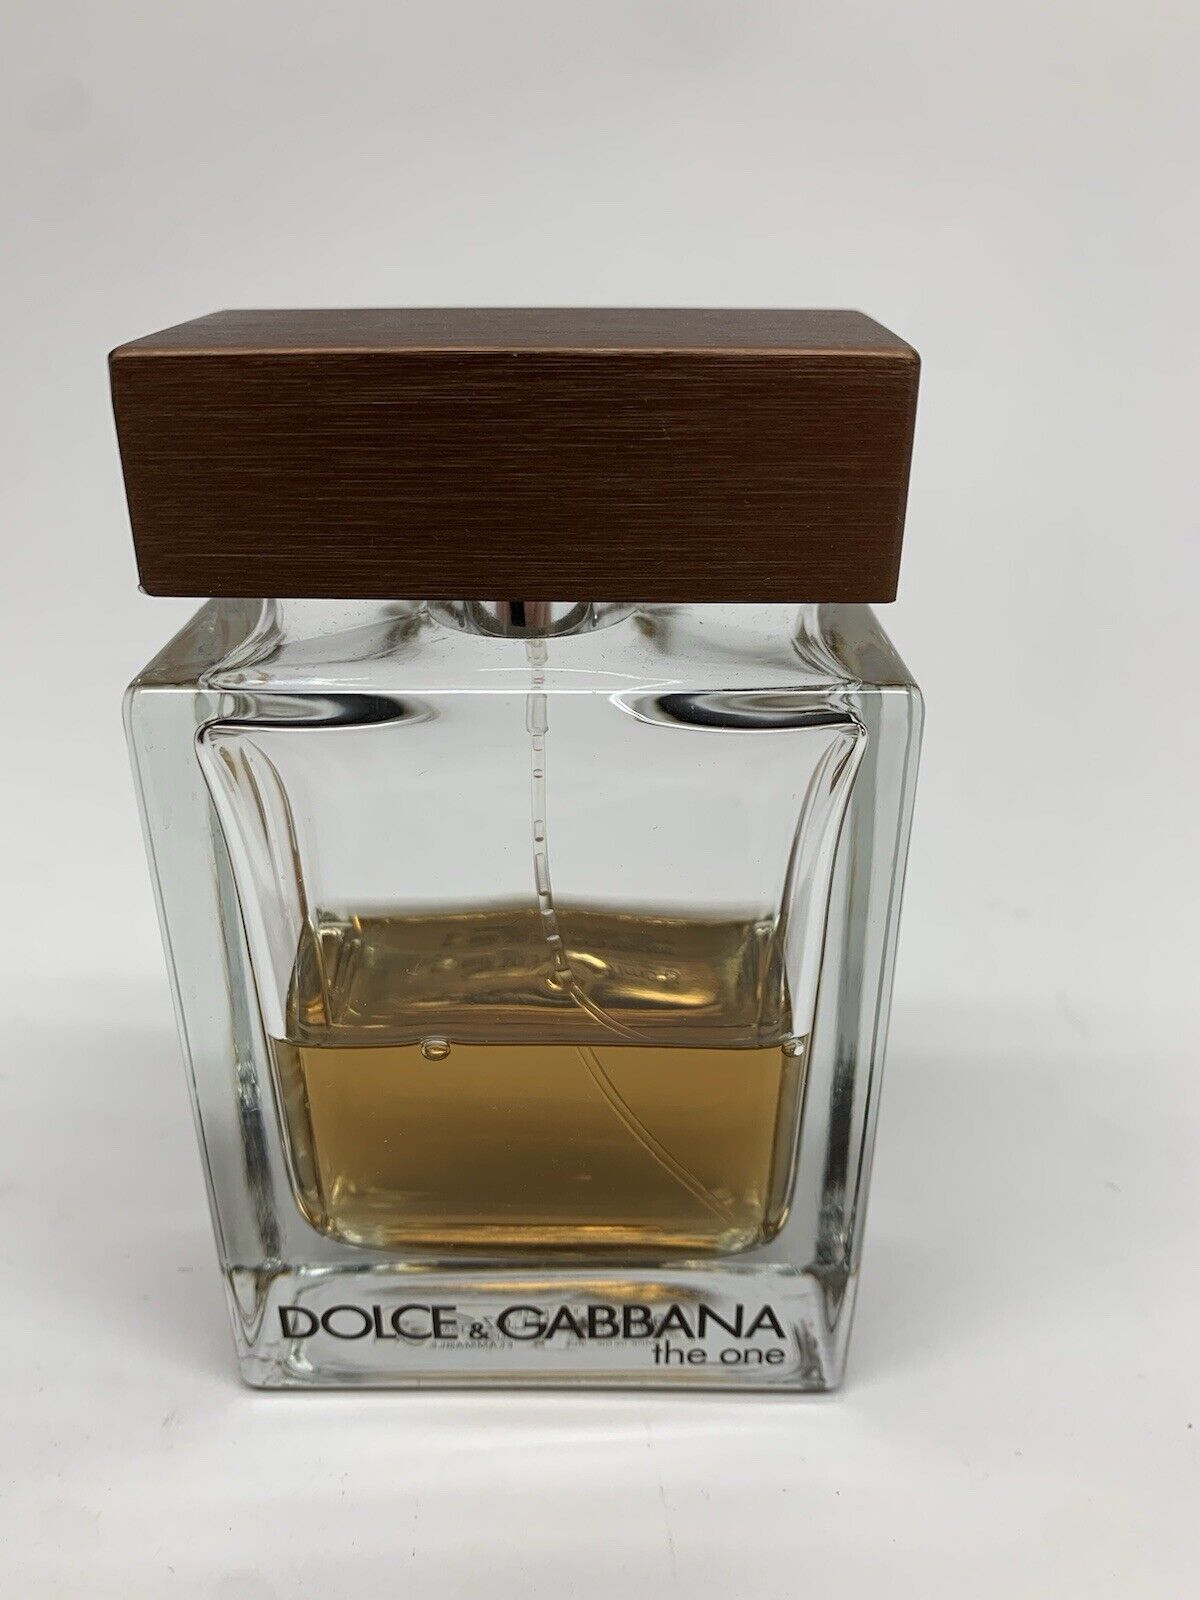 Dolce & Gabbana The One EDT Cologne for Men 3.3 oz Spray Bottle D&G